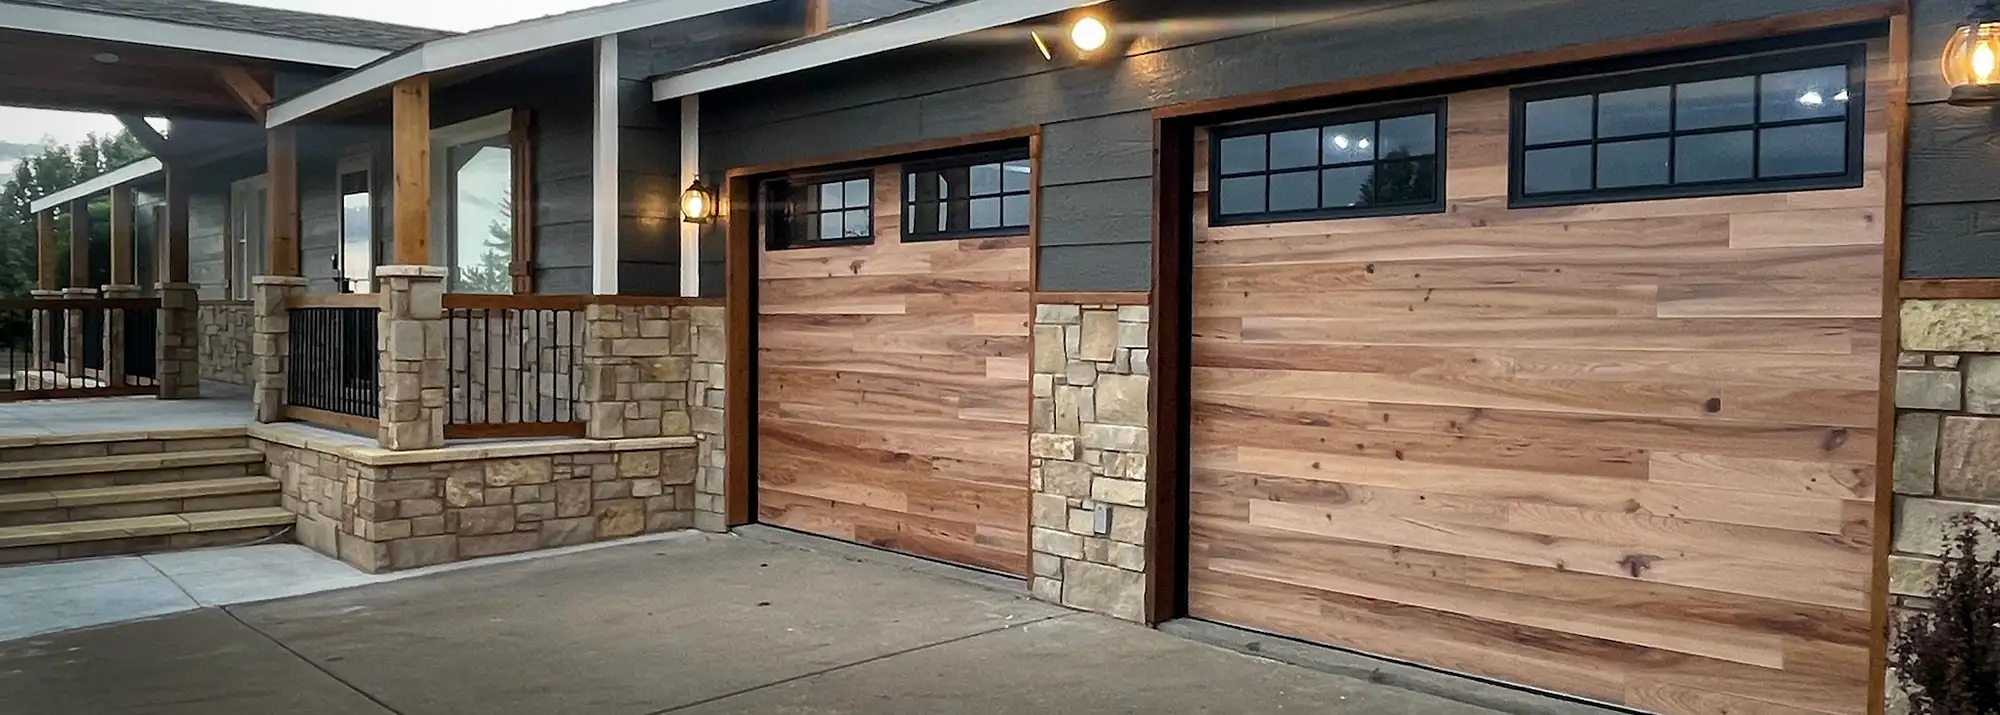 Modern Garage Doors on a Home